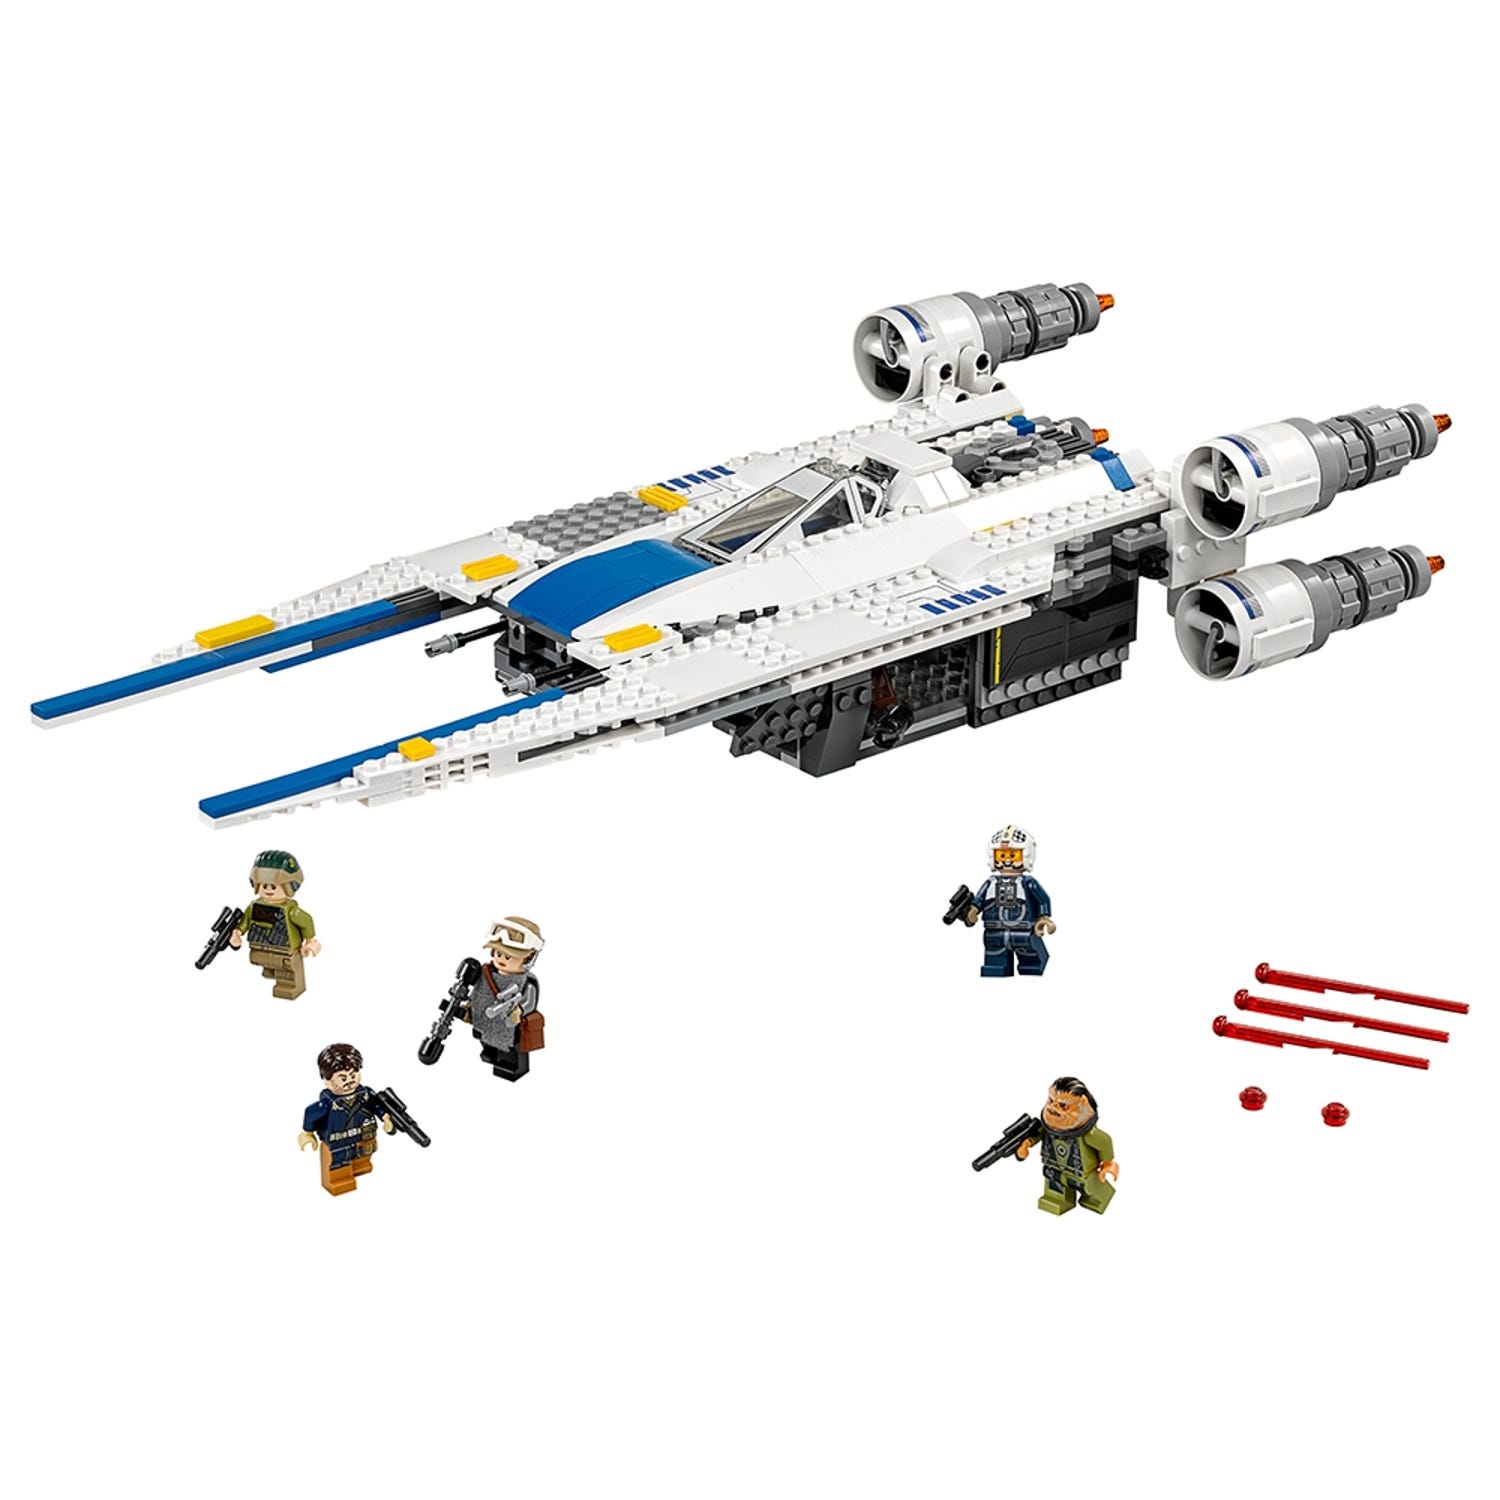 Rebel U-Wing Fighterâ¢ 75155 | Star Warsâ¢ | Buy online at the Official LEGOÂ® Shop US